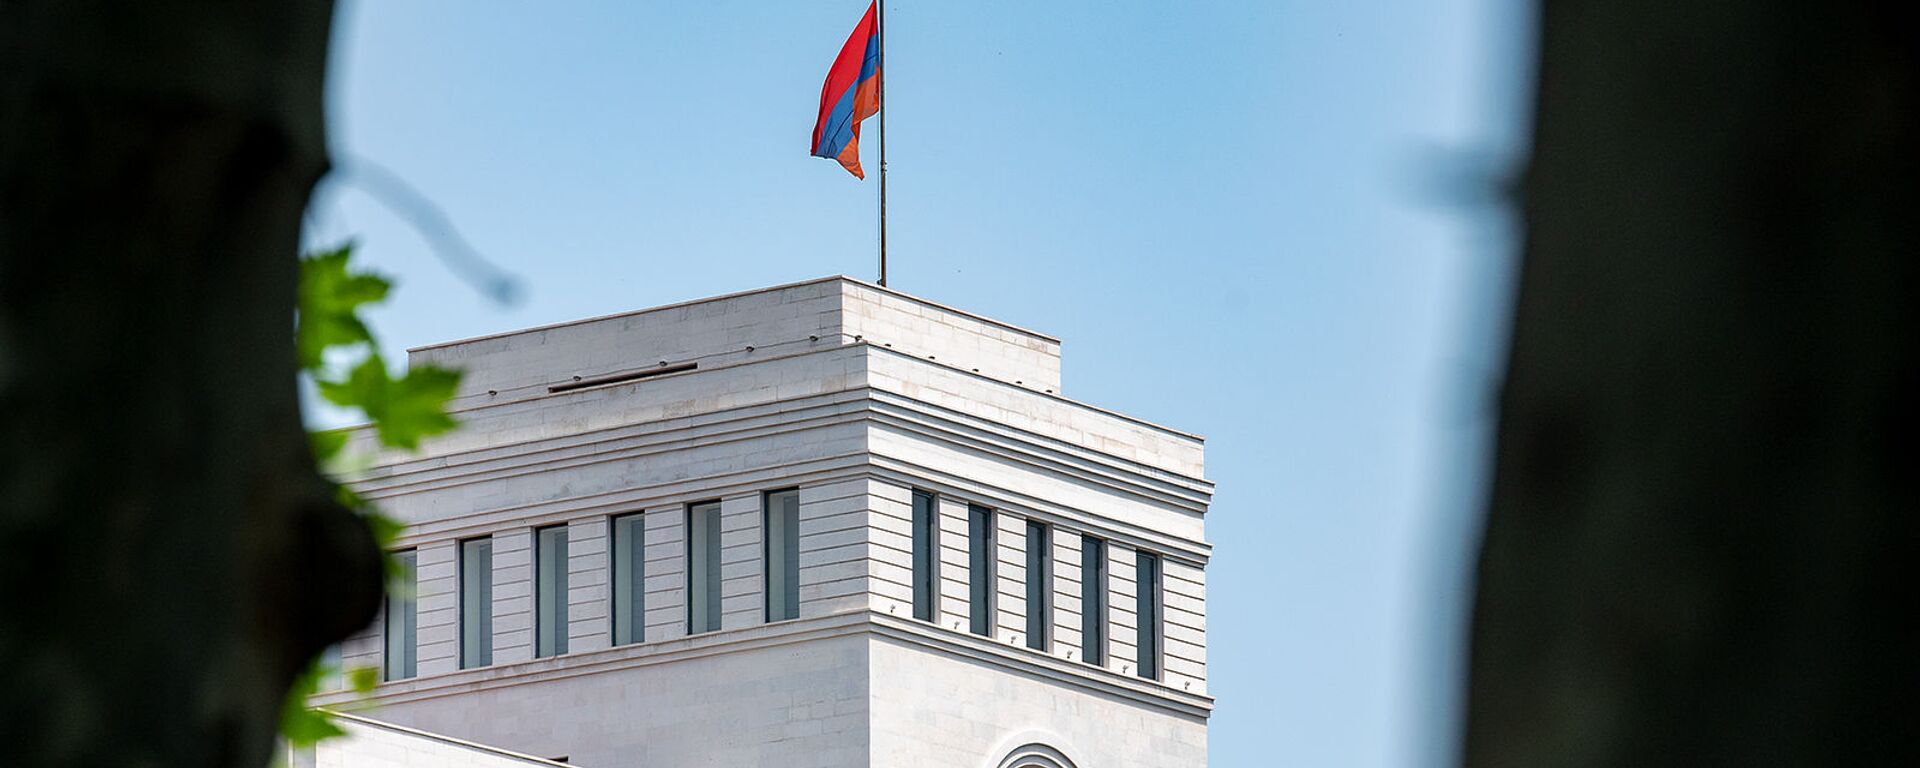 Здание Министерства иностранных дел Армении - Sputnik Армения, 1920, 24.04.2021